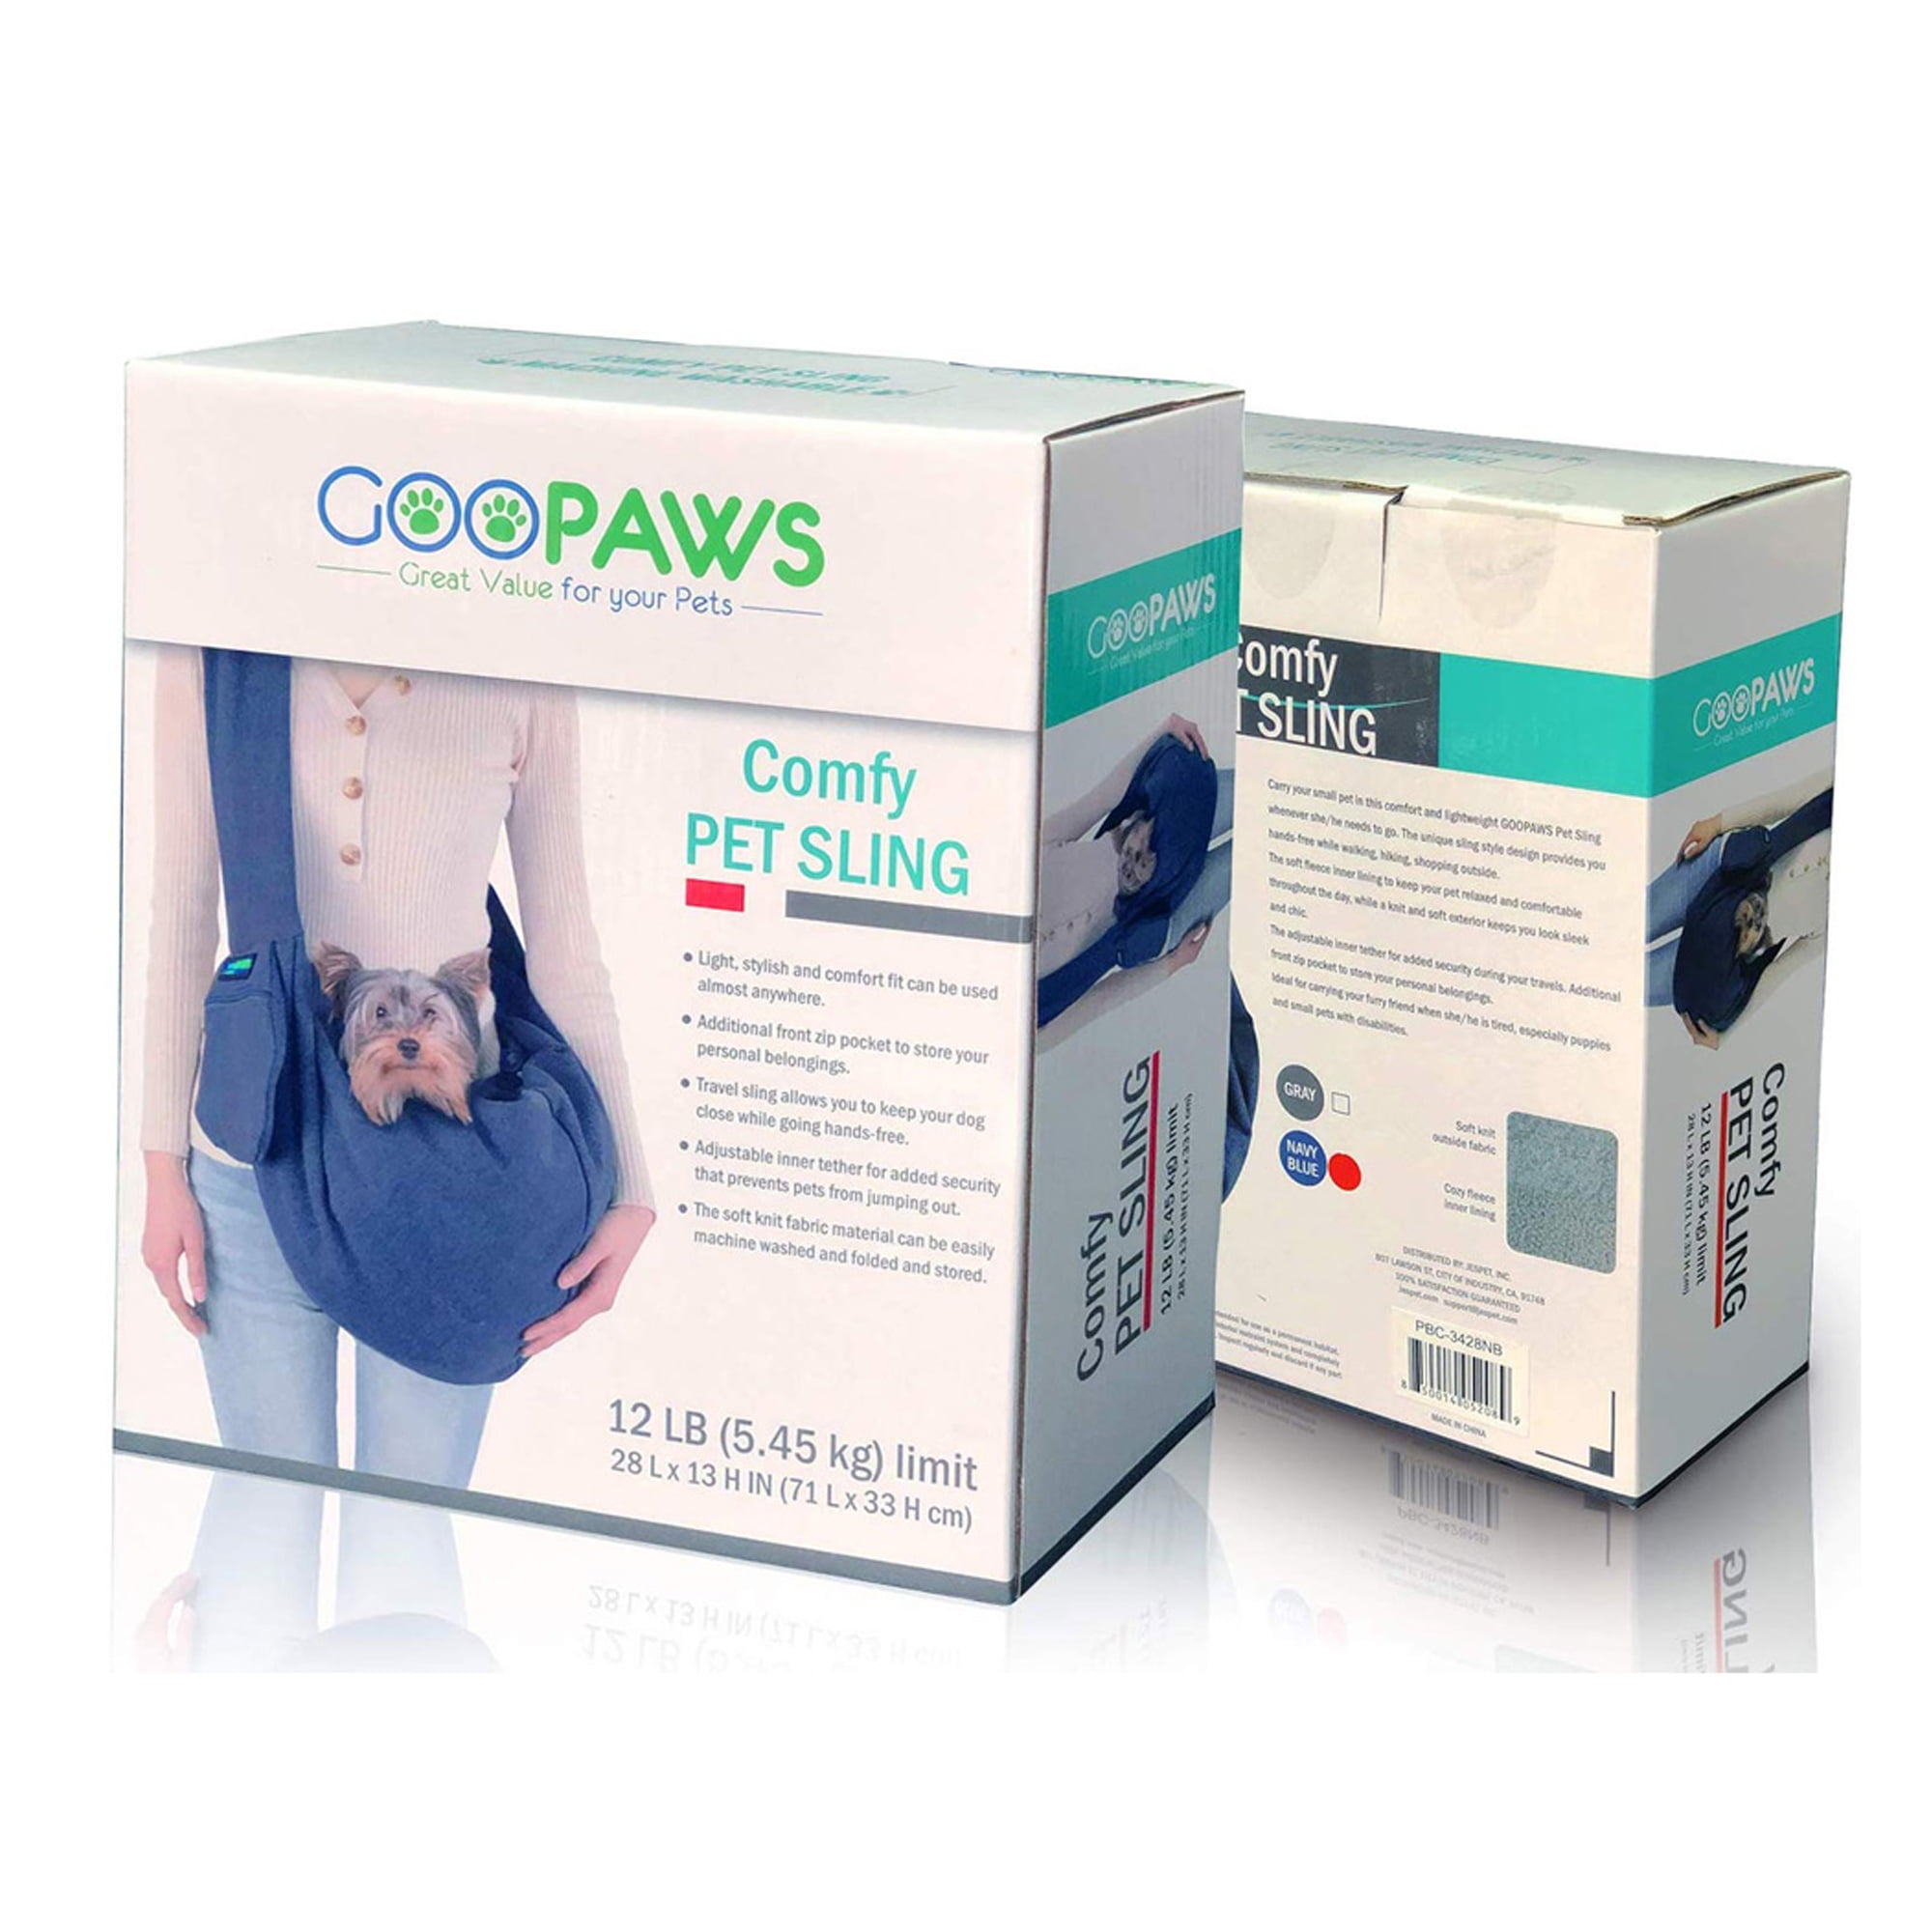 Goopaws Soft Pet Carrier 